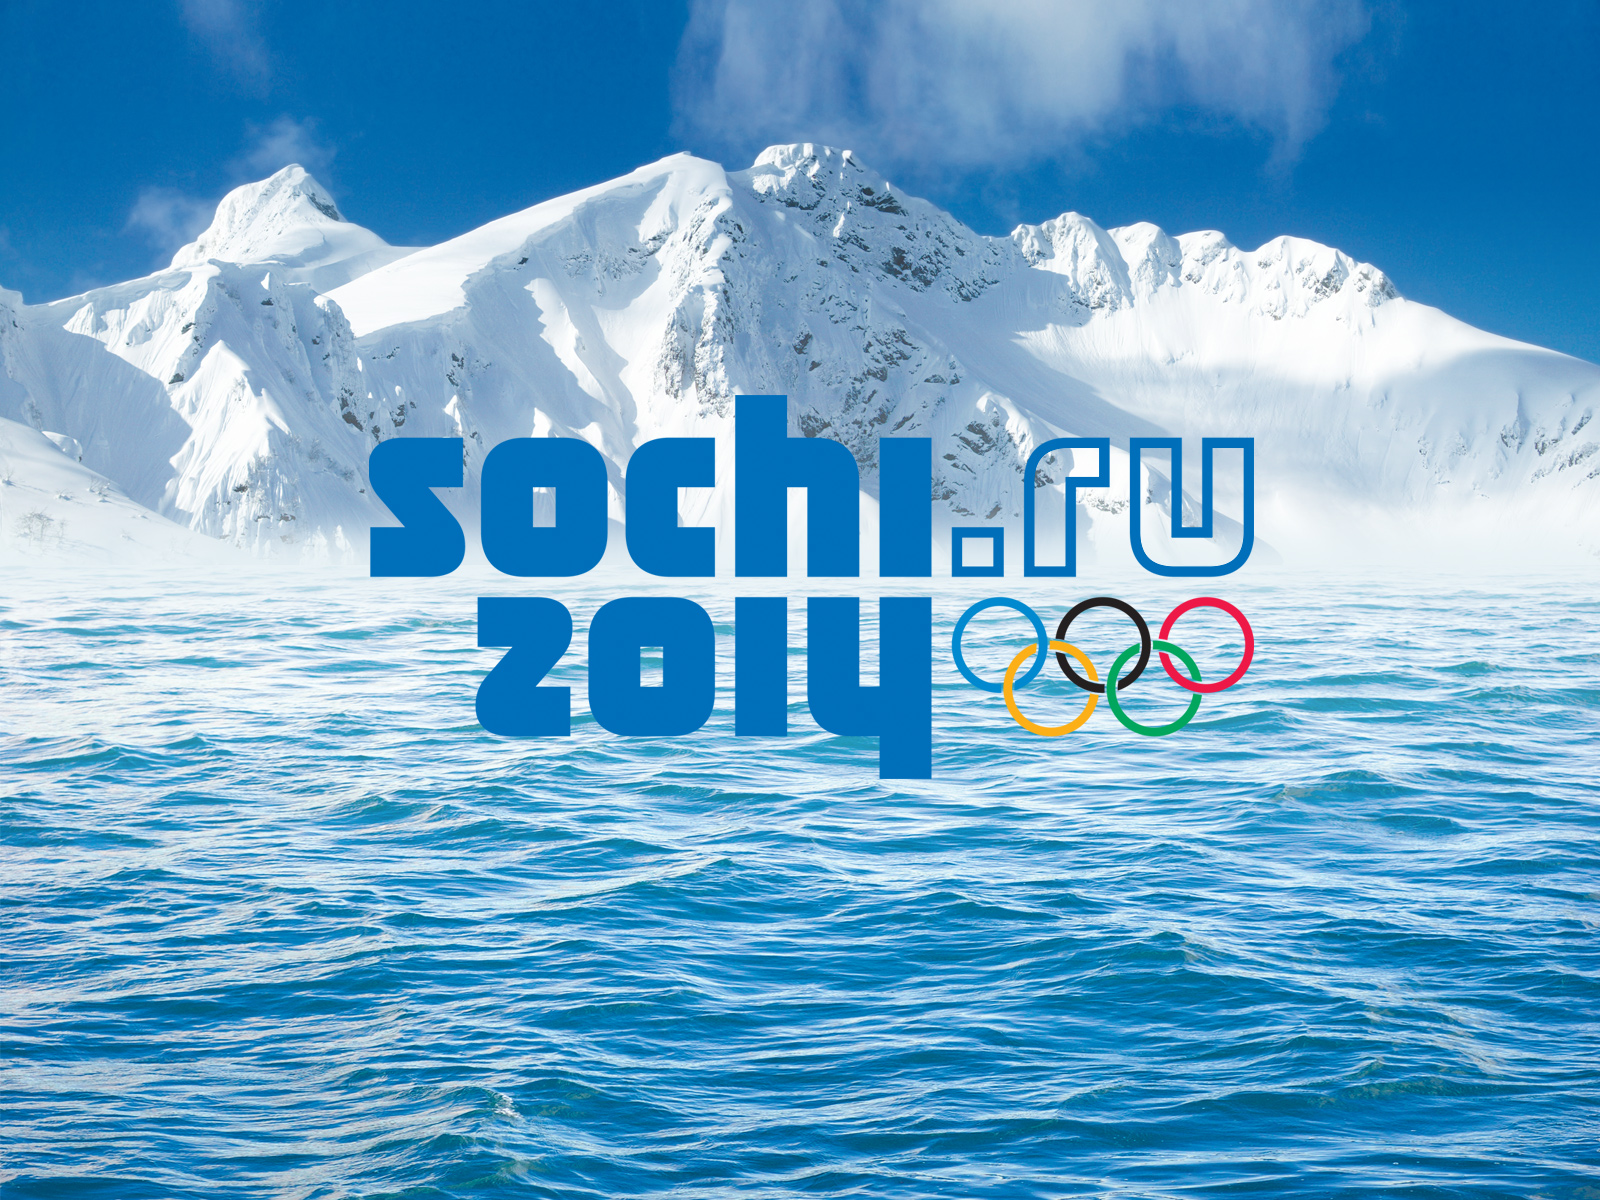 Olimpiadi Sochi 2014: Orari gare italiani con diretta TV e streaming oggi, programma 18 febbraio